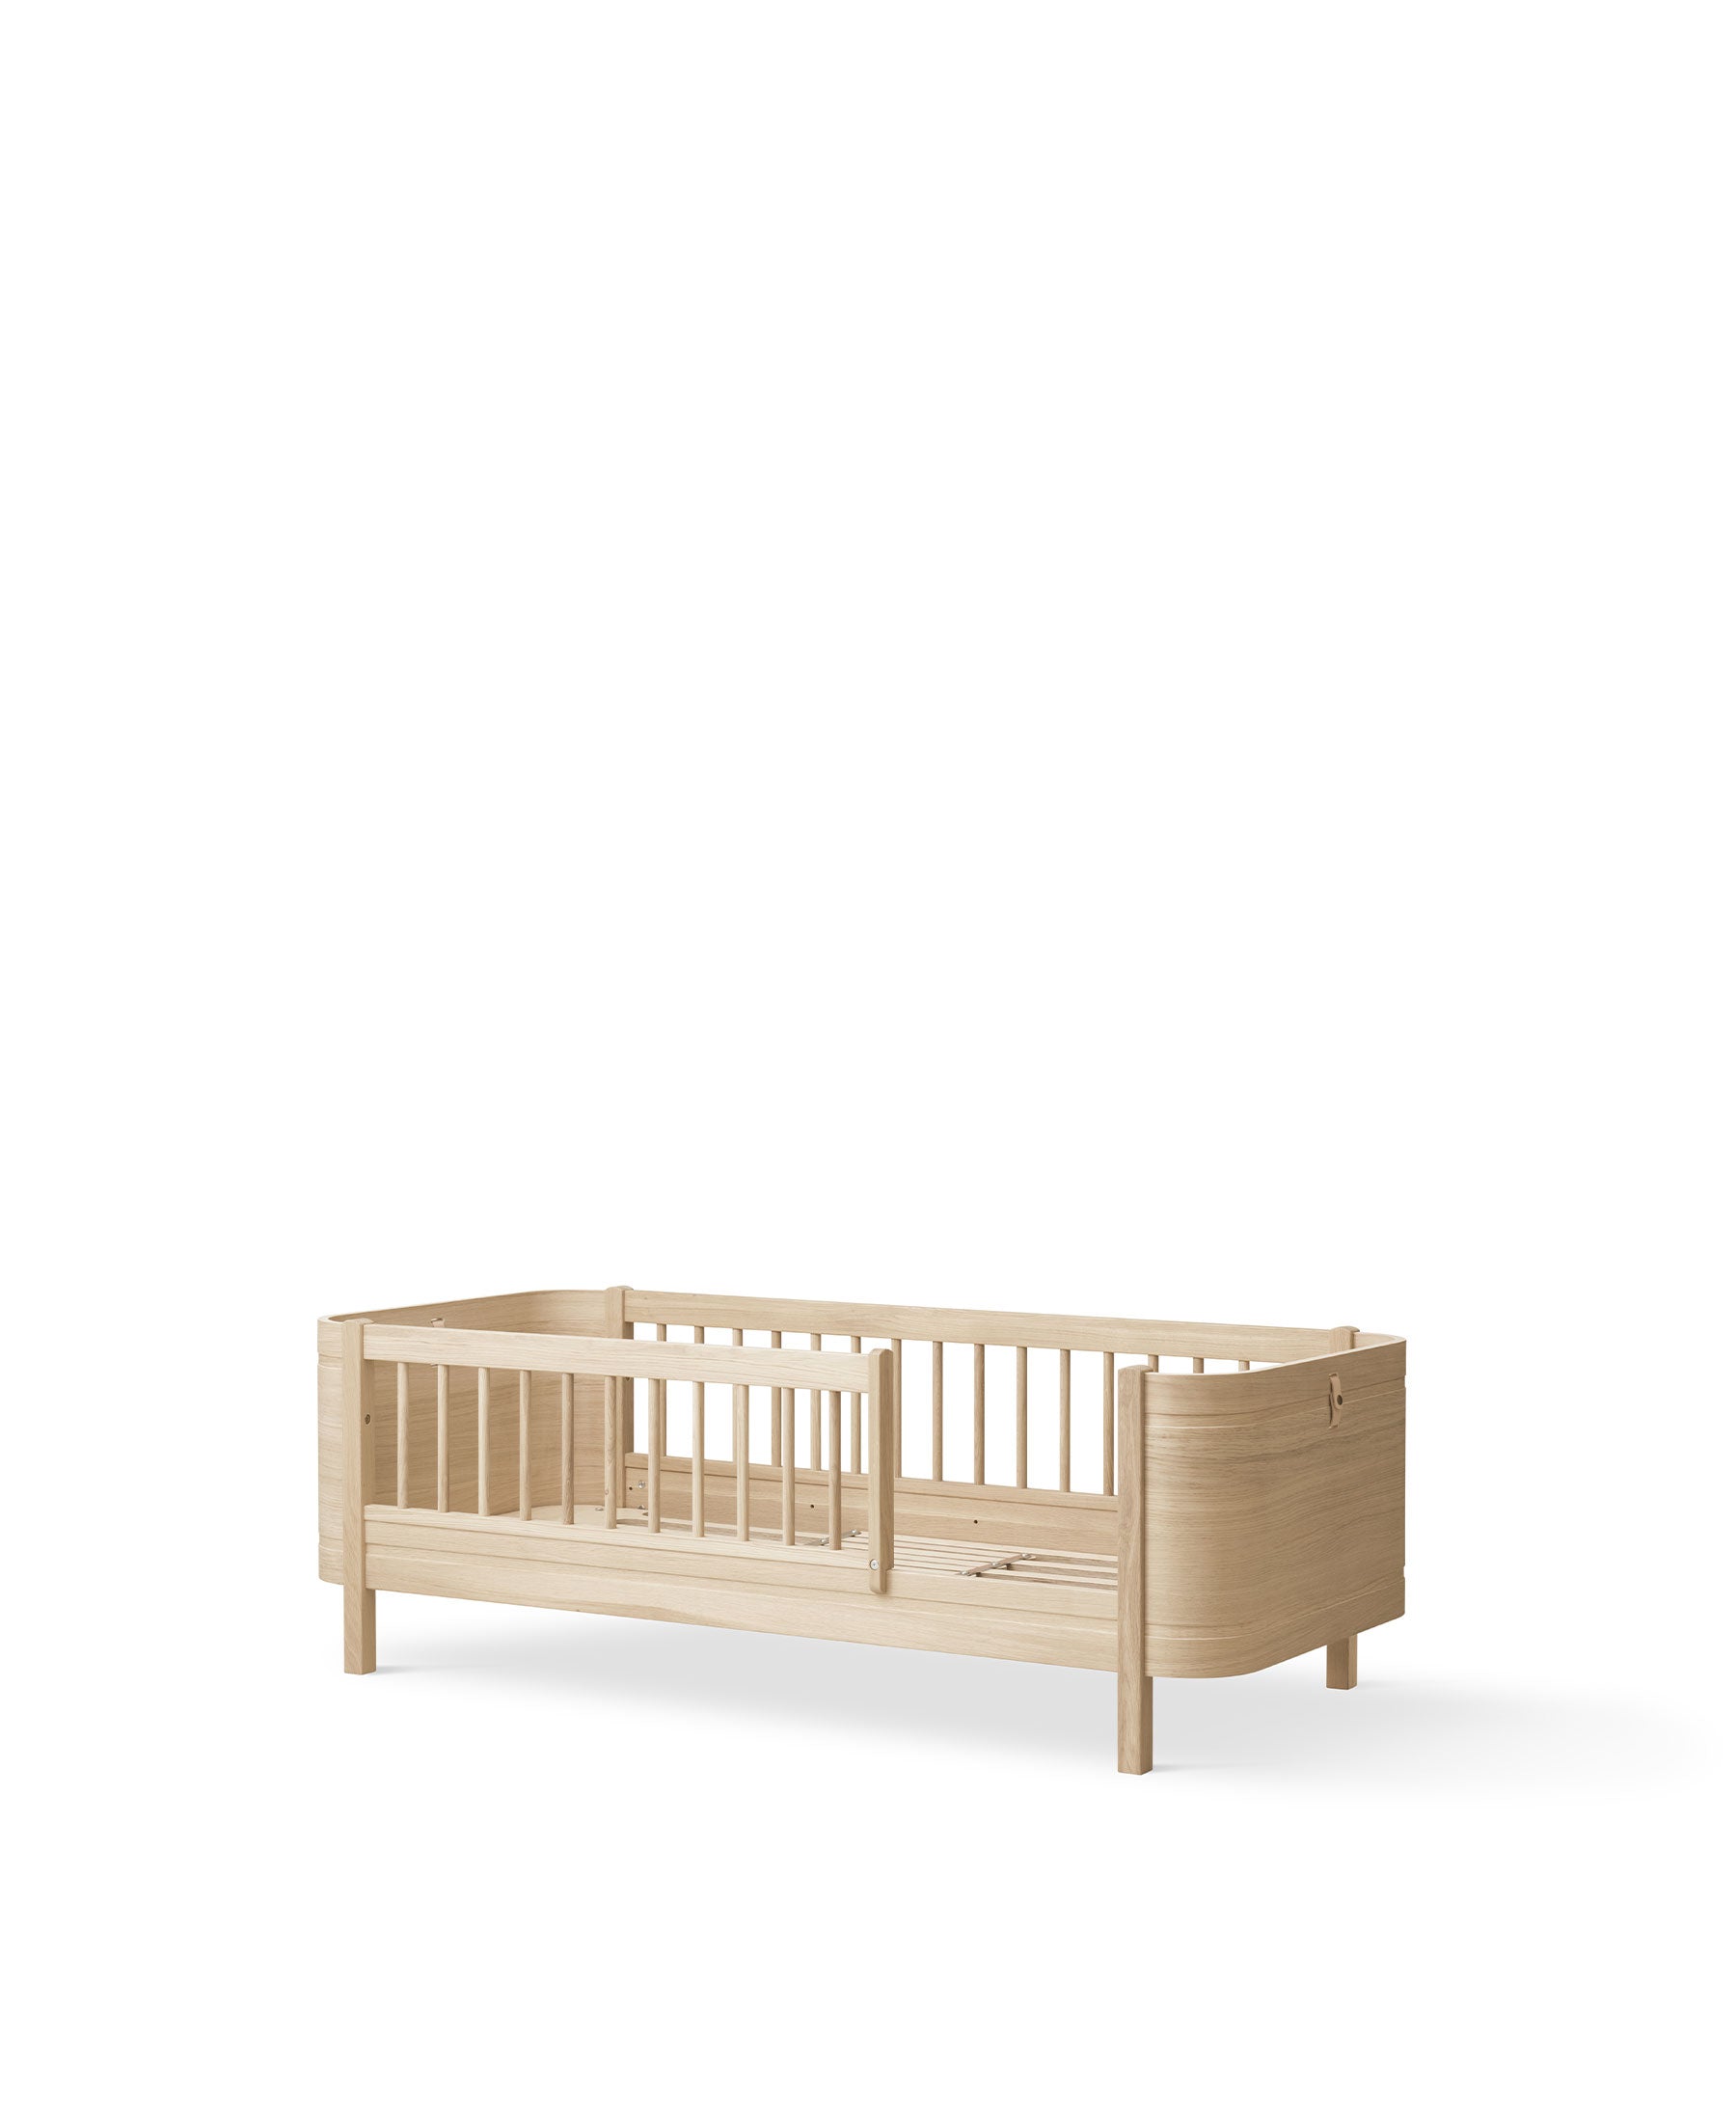 Transat Bébé évolutif Wood - Chêne/Naturel Oliver Furniture pour chambre  enfant - Les Enfants du Design